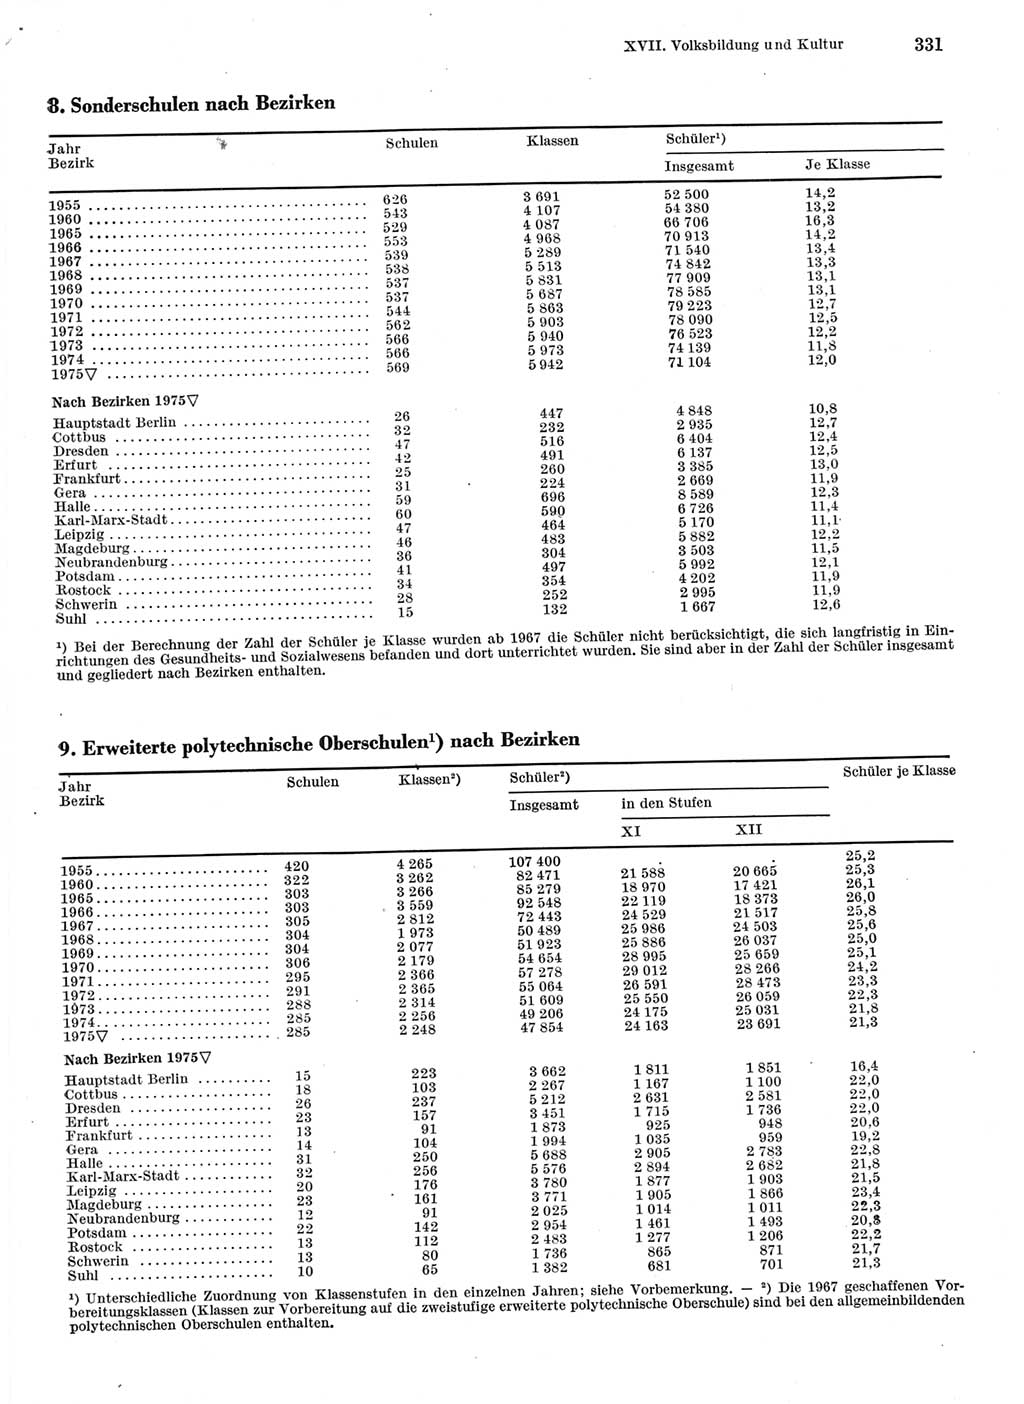 Statistisches Jahrbuch der Deutschen Demokratischen Republik (DDR) 1976, Seite 331 (Stat. Jb. DDR 1976, S. 331)